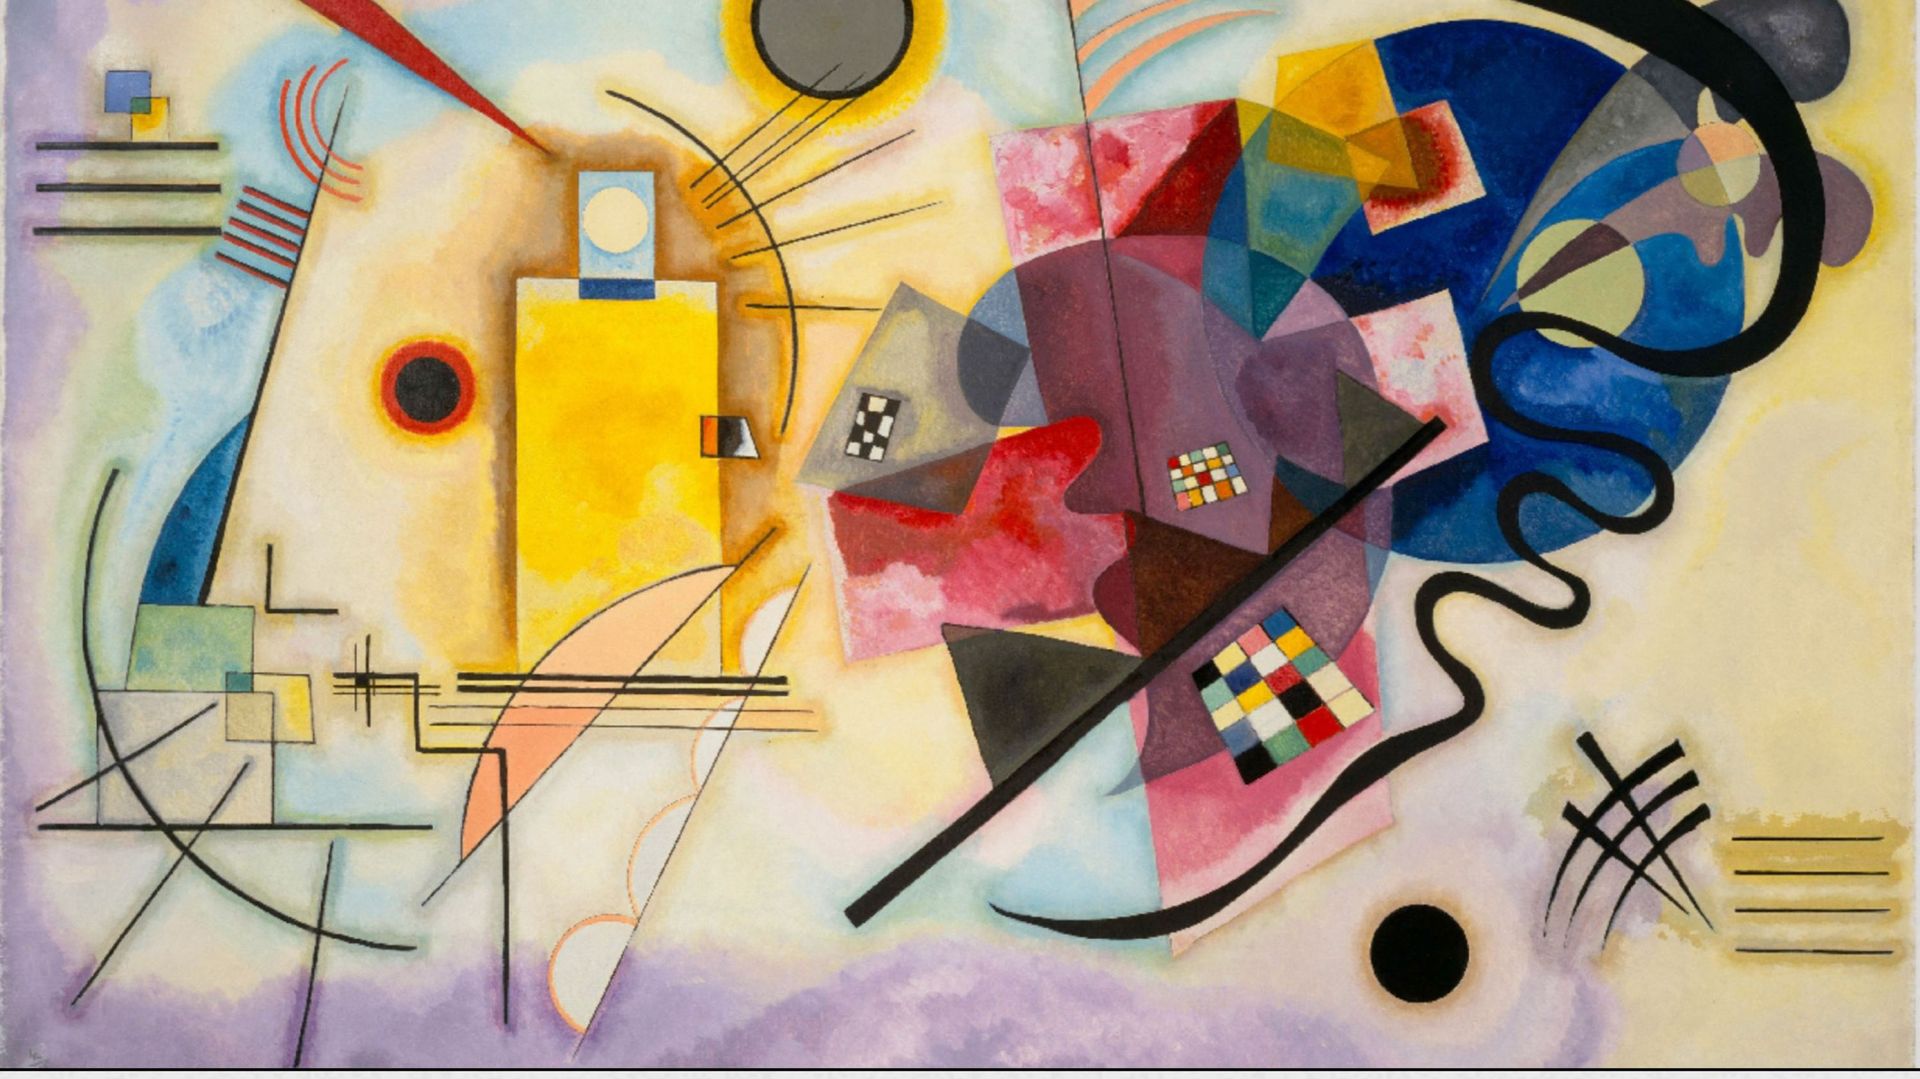 L'oeuvre de Kandinsky à redécouvrir à travers une très belle expo virtuelle